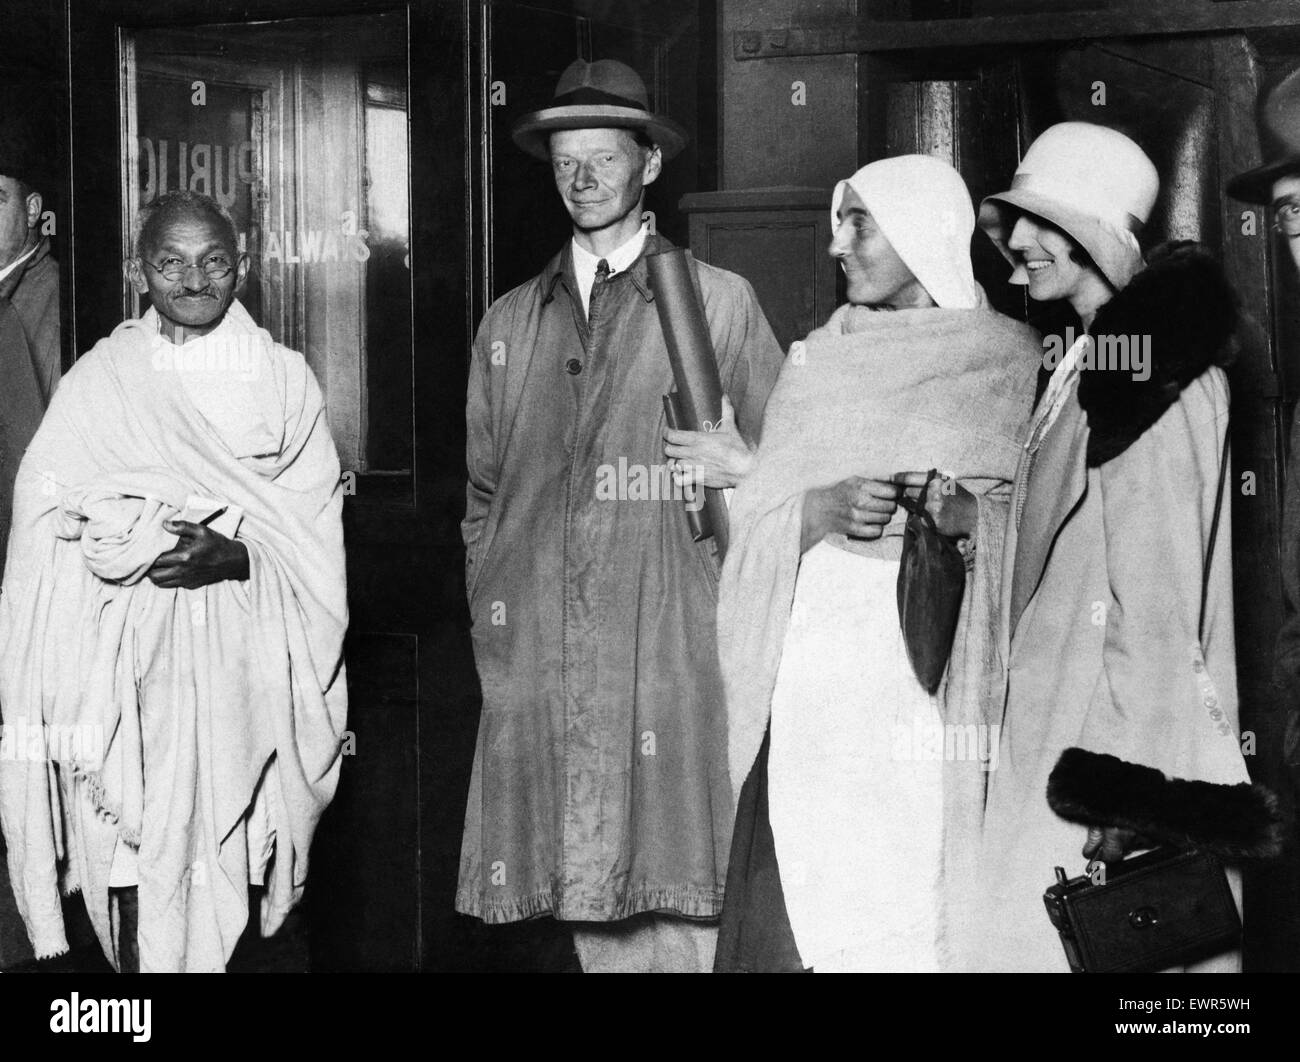 'Mahatma' Mohandas Gandhi, chef du mouvement pour l'indépendance de l'Inde britannique en Inde sous domination, photographié au cours de sa visite en Grande-Bretagne en 1931. On le voit ici à la gare New Street de Birmingham avant de partir pour Londres, accompagné de M. H G Alexa Banque D'Images